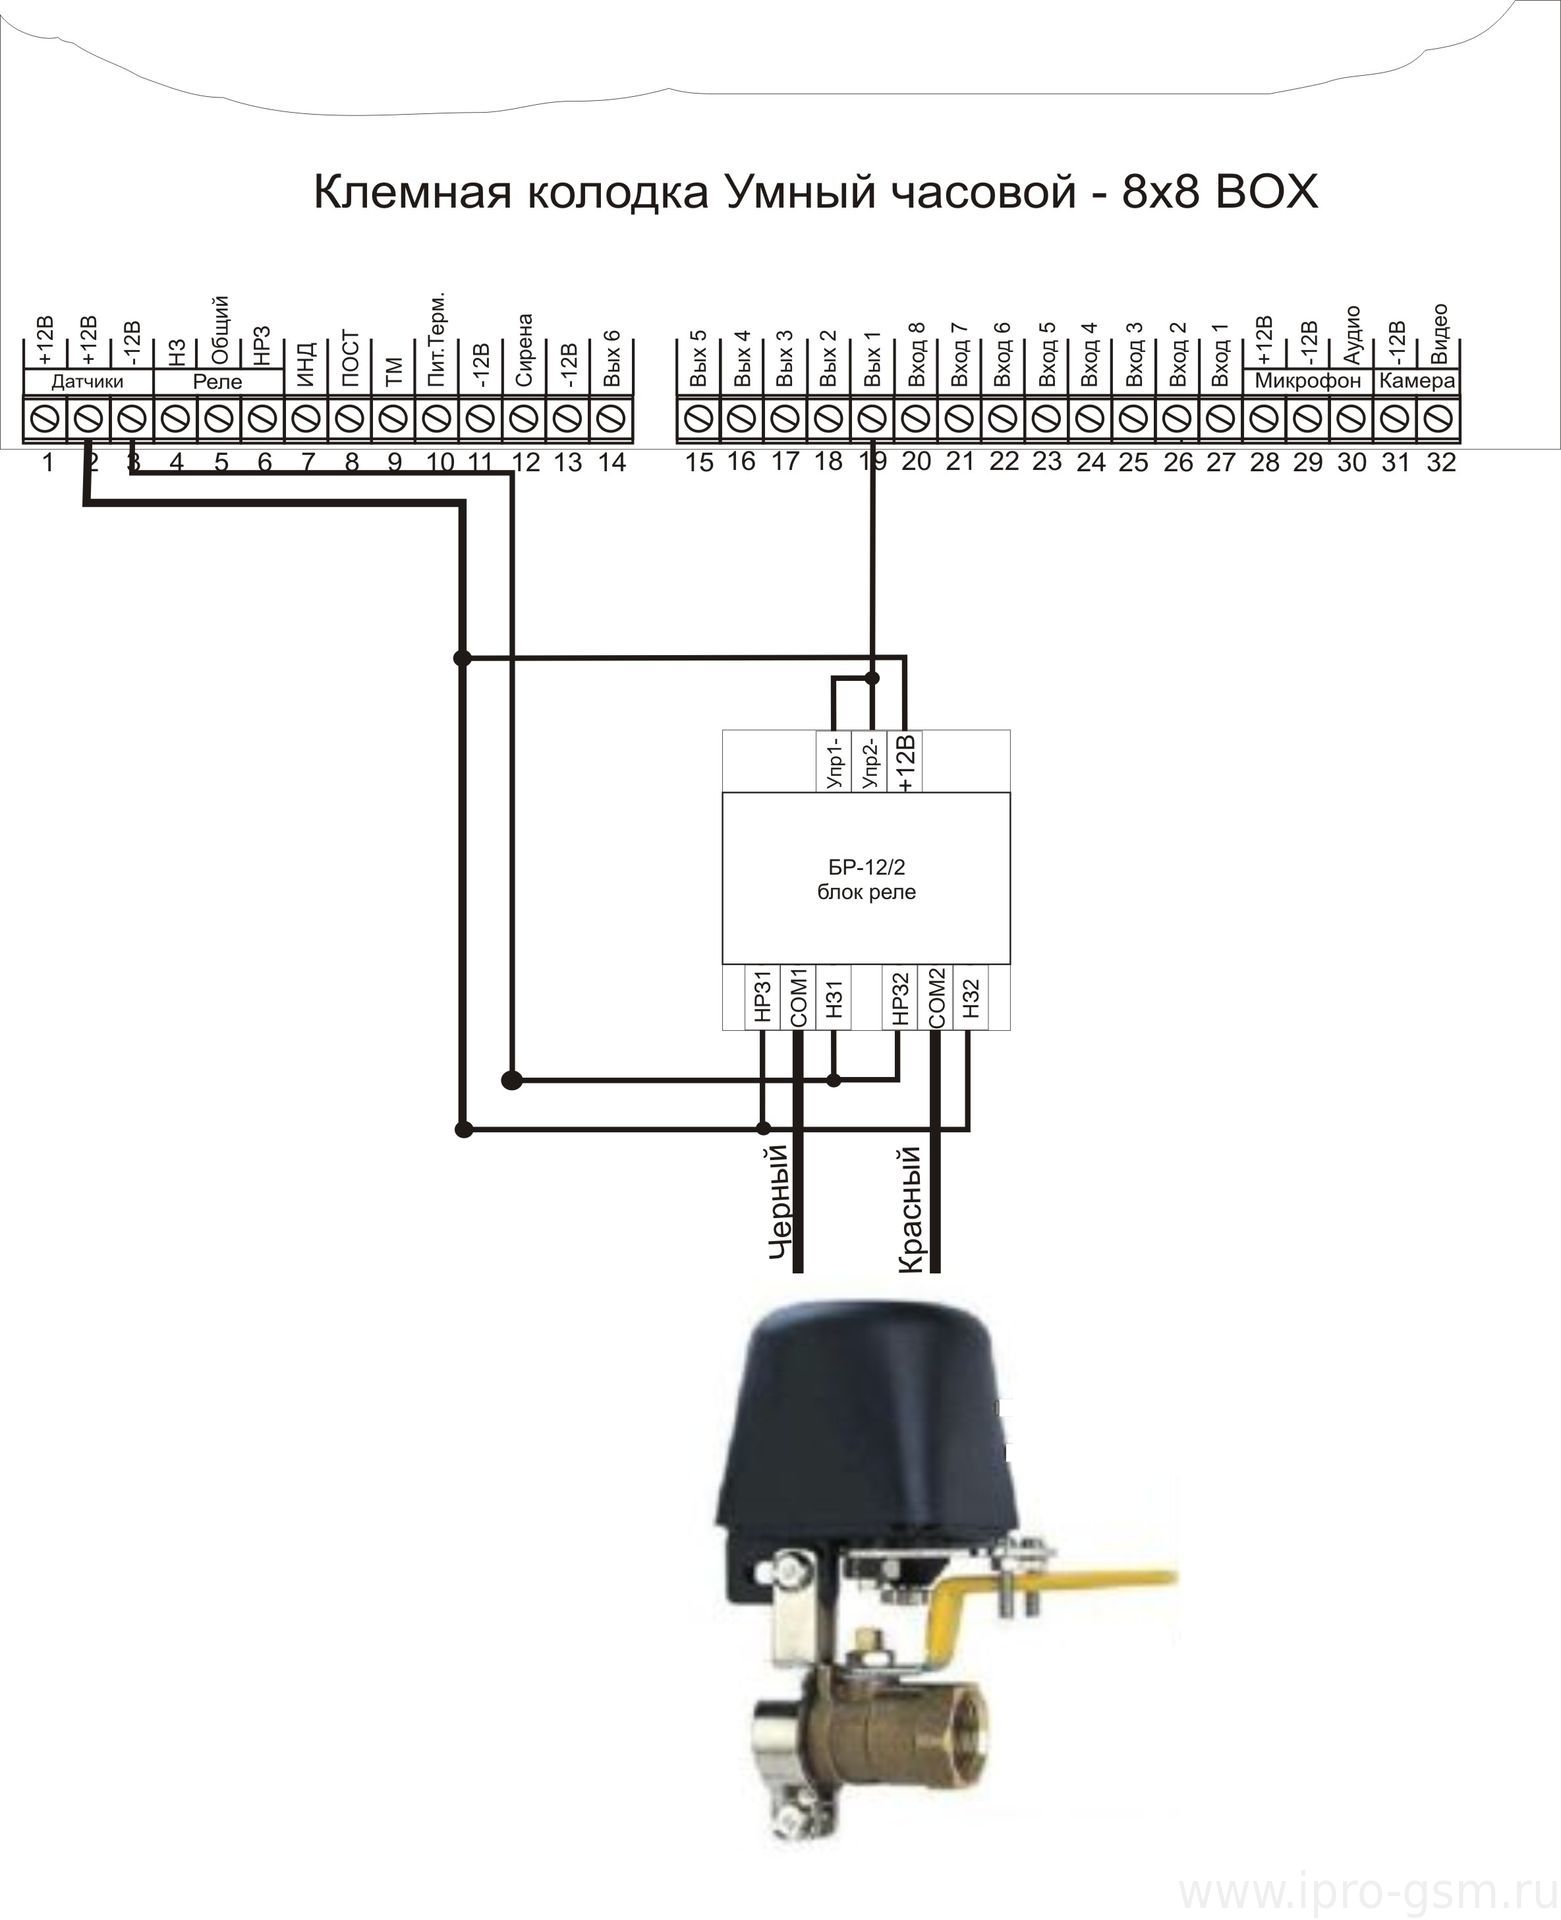 Схема подключения электропривода на шаровой кран к 3G-MMS сигнализации Часовой 8х8 RF BOX